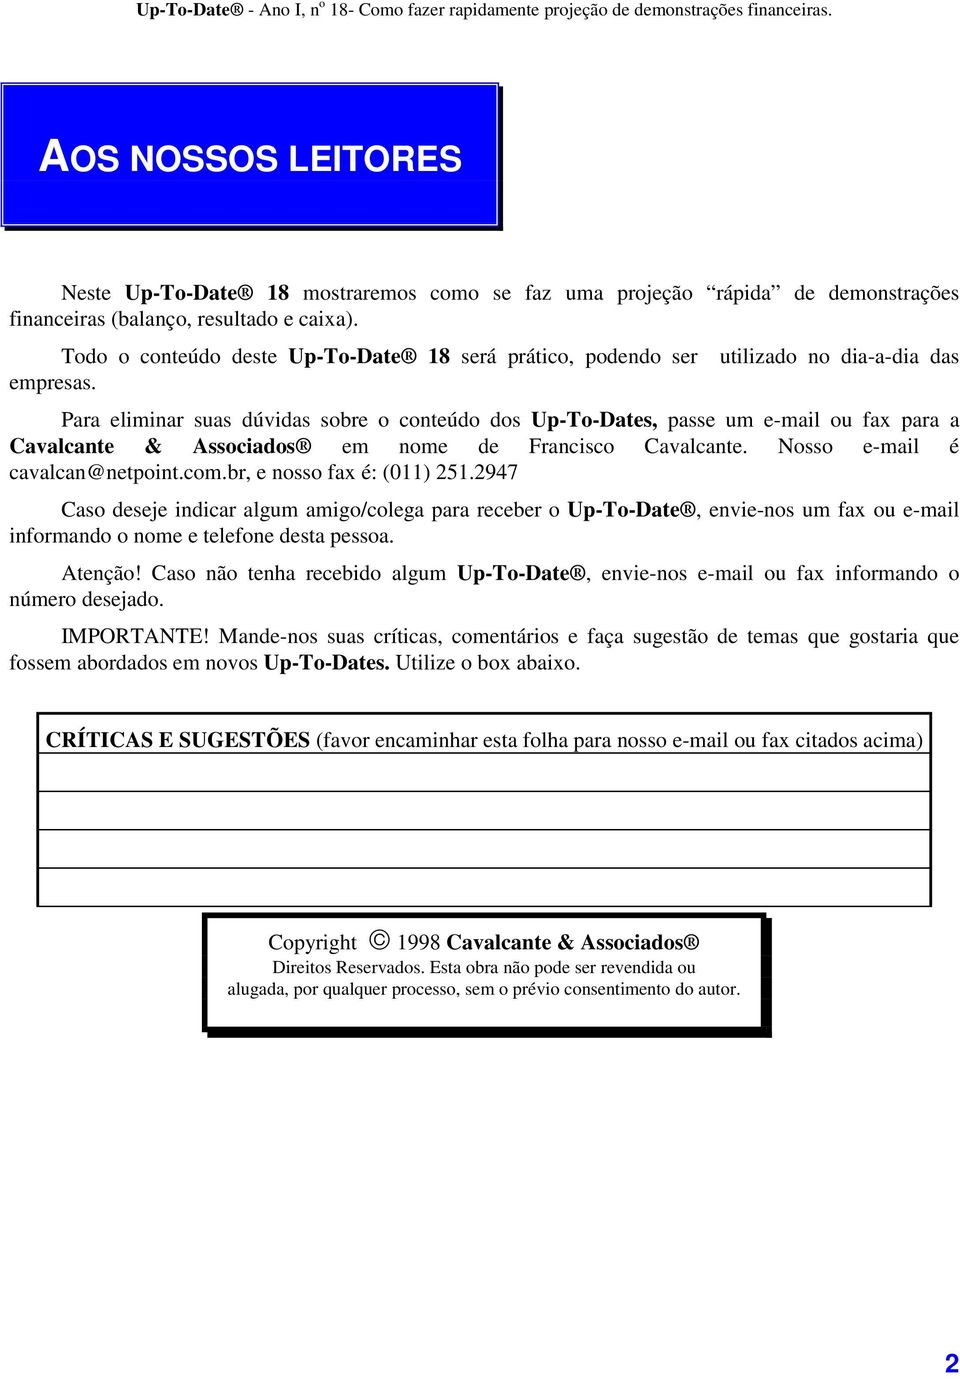 Para eliminar suas dúvidas sobre o conteúdo dos Up-To-Dates, passe um e-mail ou fax para a Cavalcante & Associados em nome de Francisco Cavalcante. Nosso e-mail é cavalcan@netpoint.com.